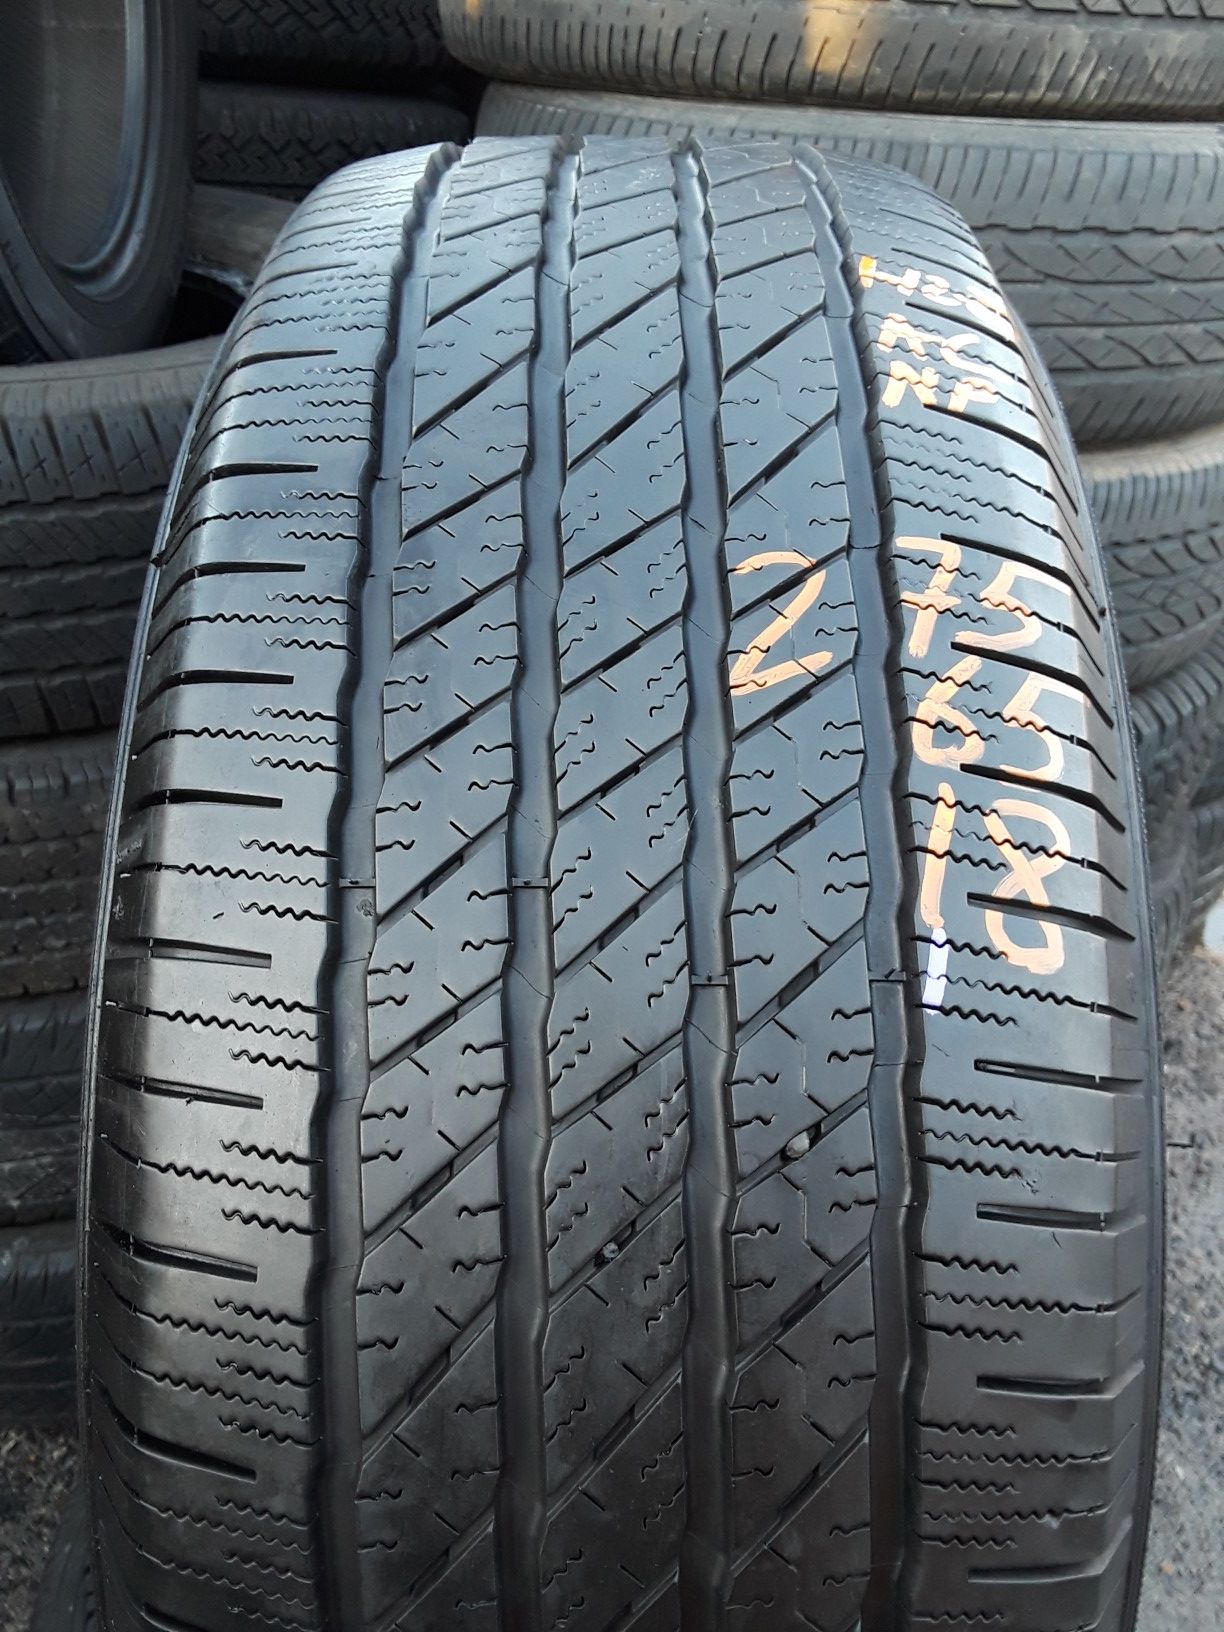 275/65-18 #1 tire